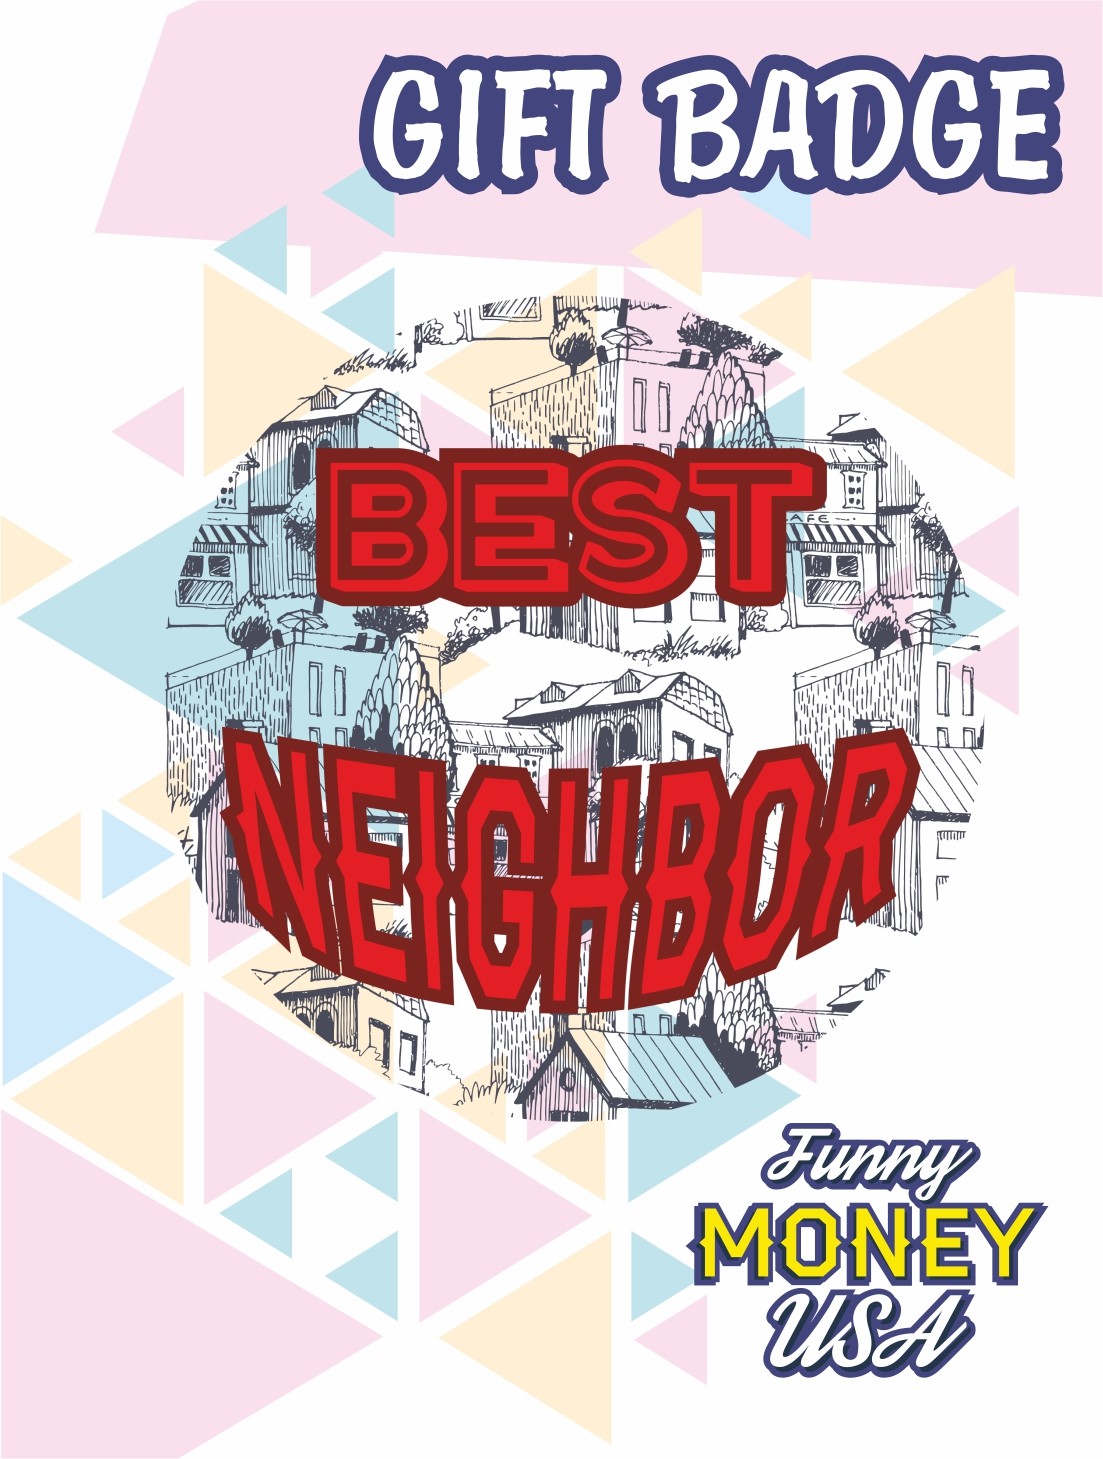 Gift badges "Best neighbor"